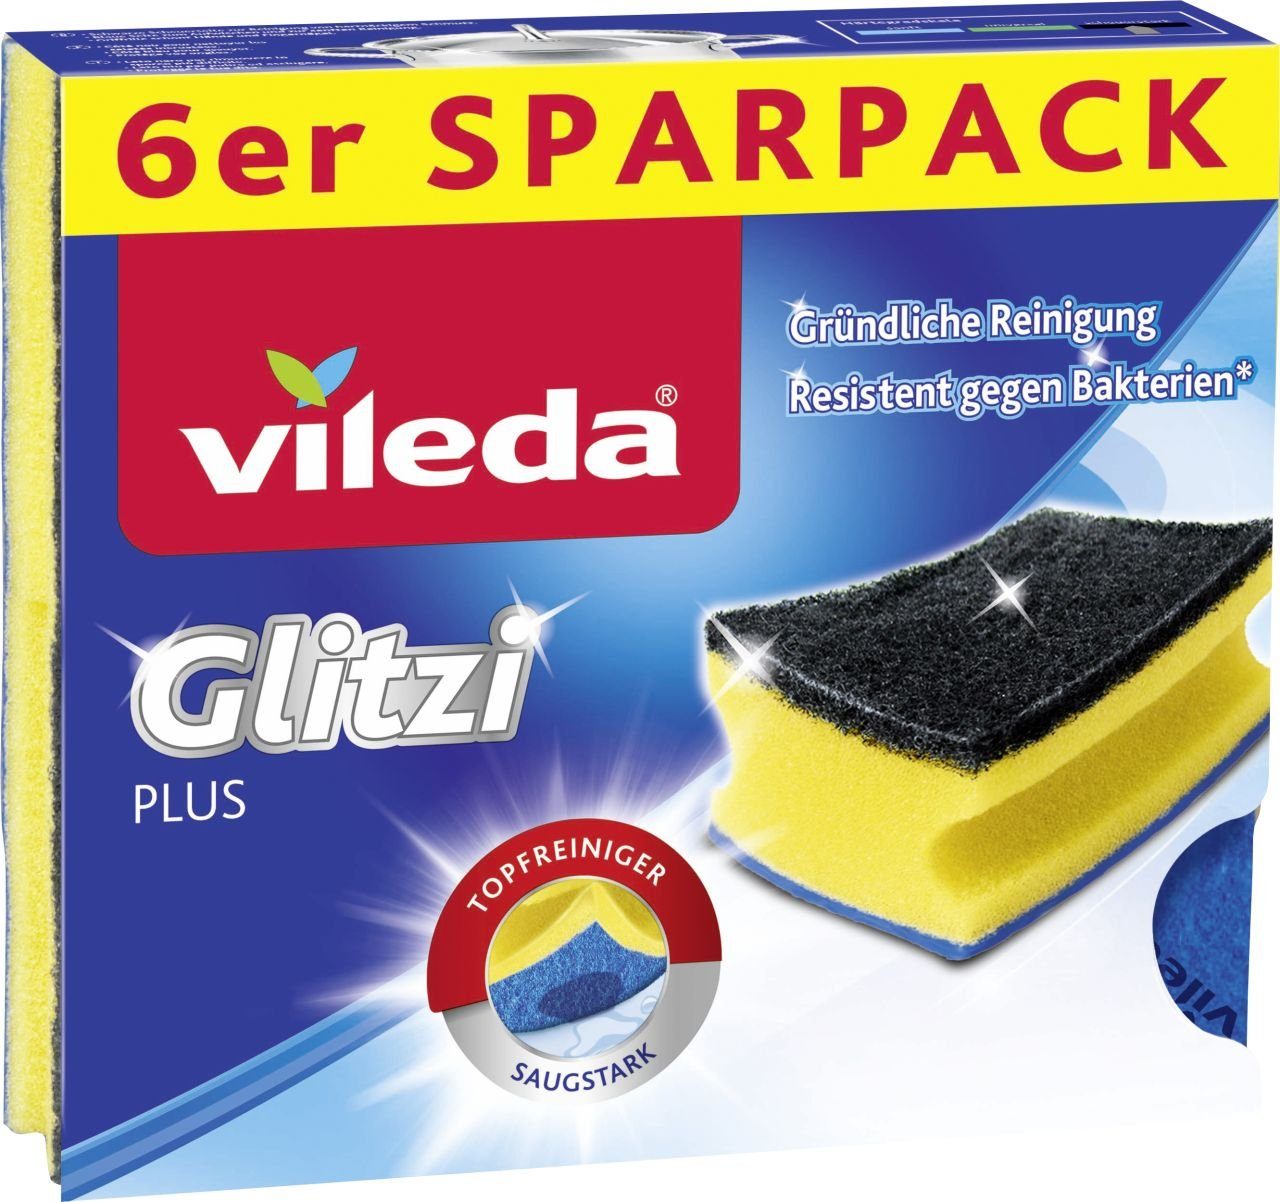 Pack Glitzi Vileda Plus Vileda Geschirrtuch 6-er Topfreiniger